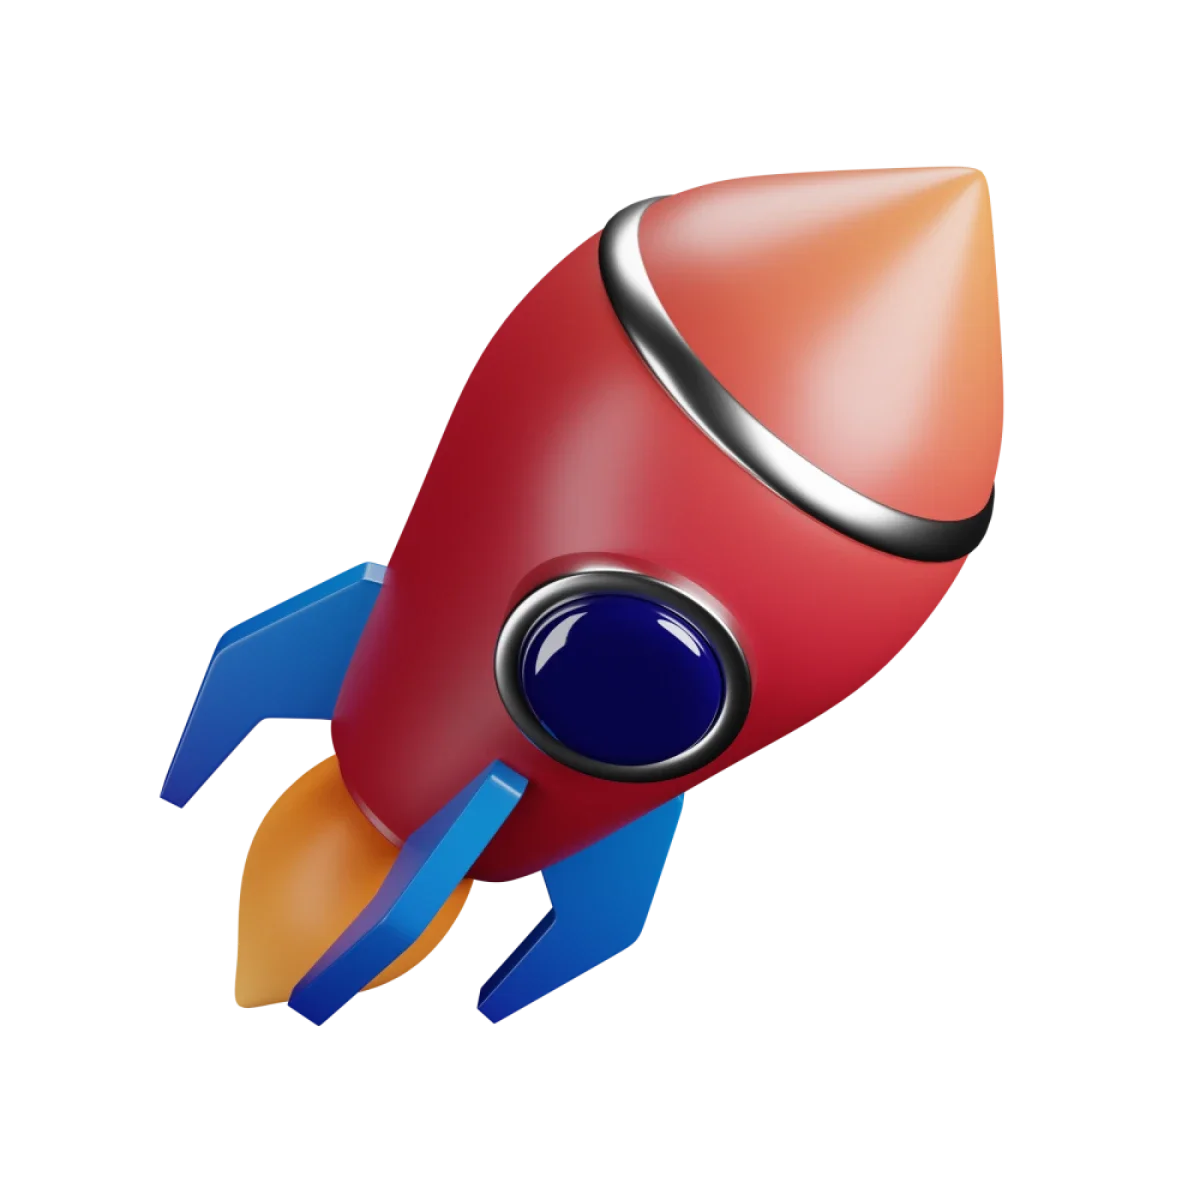 Rocket dynamic color